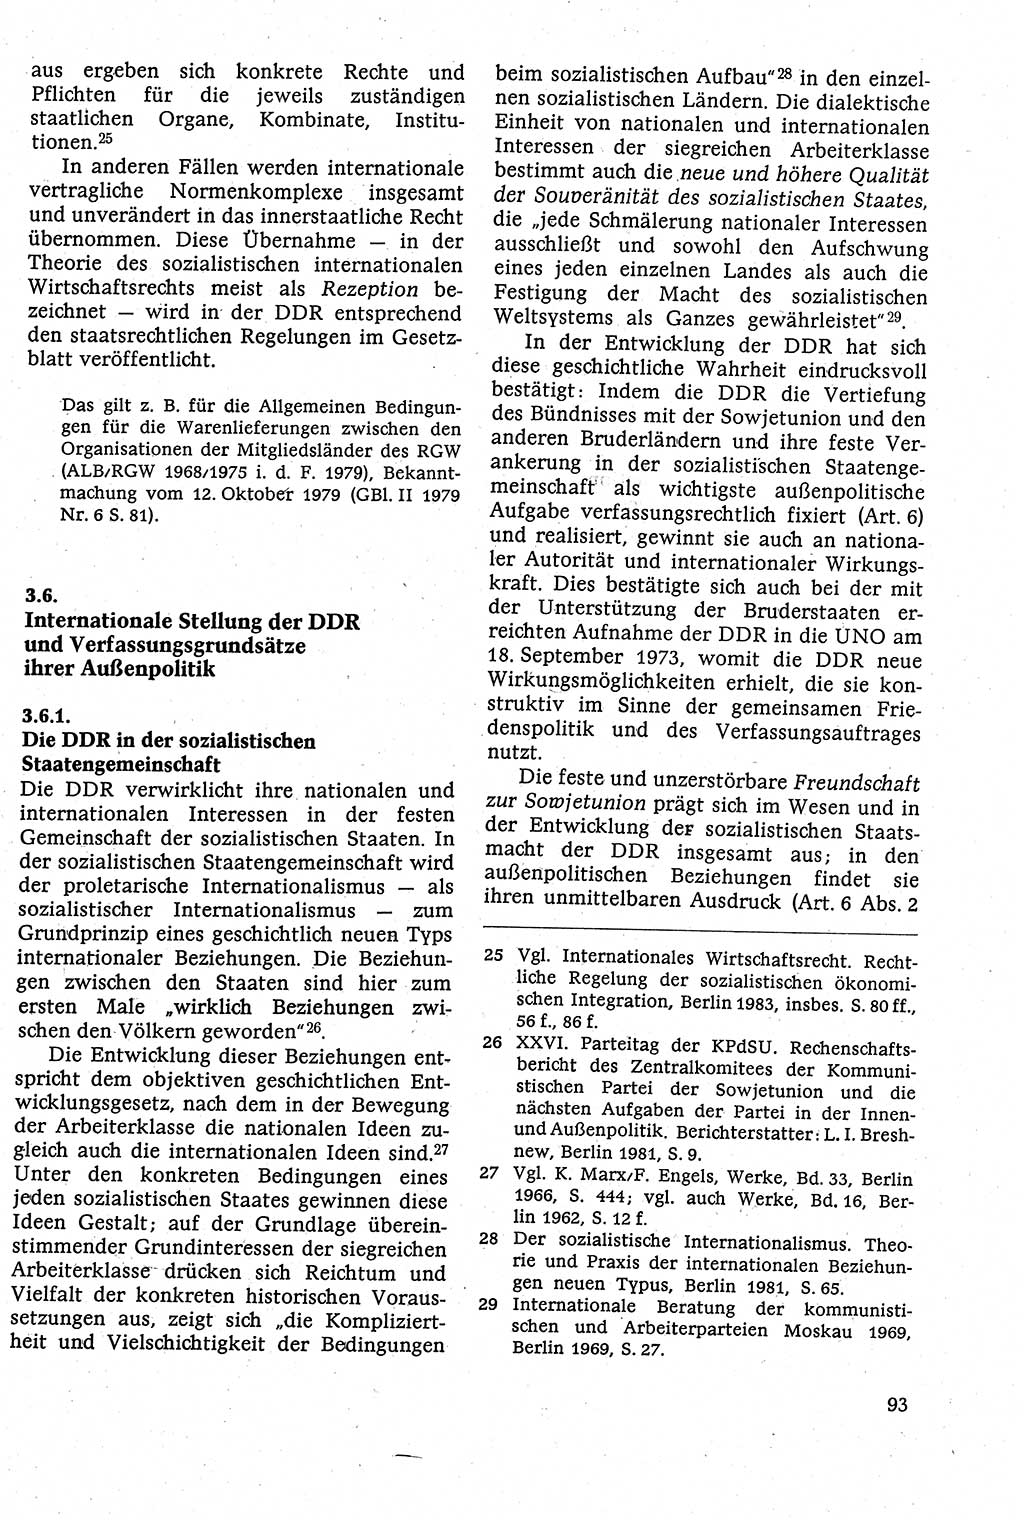 Staatsrecht der DDR [Deutsche Demokratische Republik (DDR)], Lehrbuch 1984, Seite 93 (St.-R. DDR Lb. 1984, S. 93)